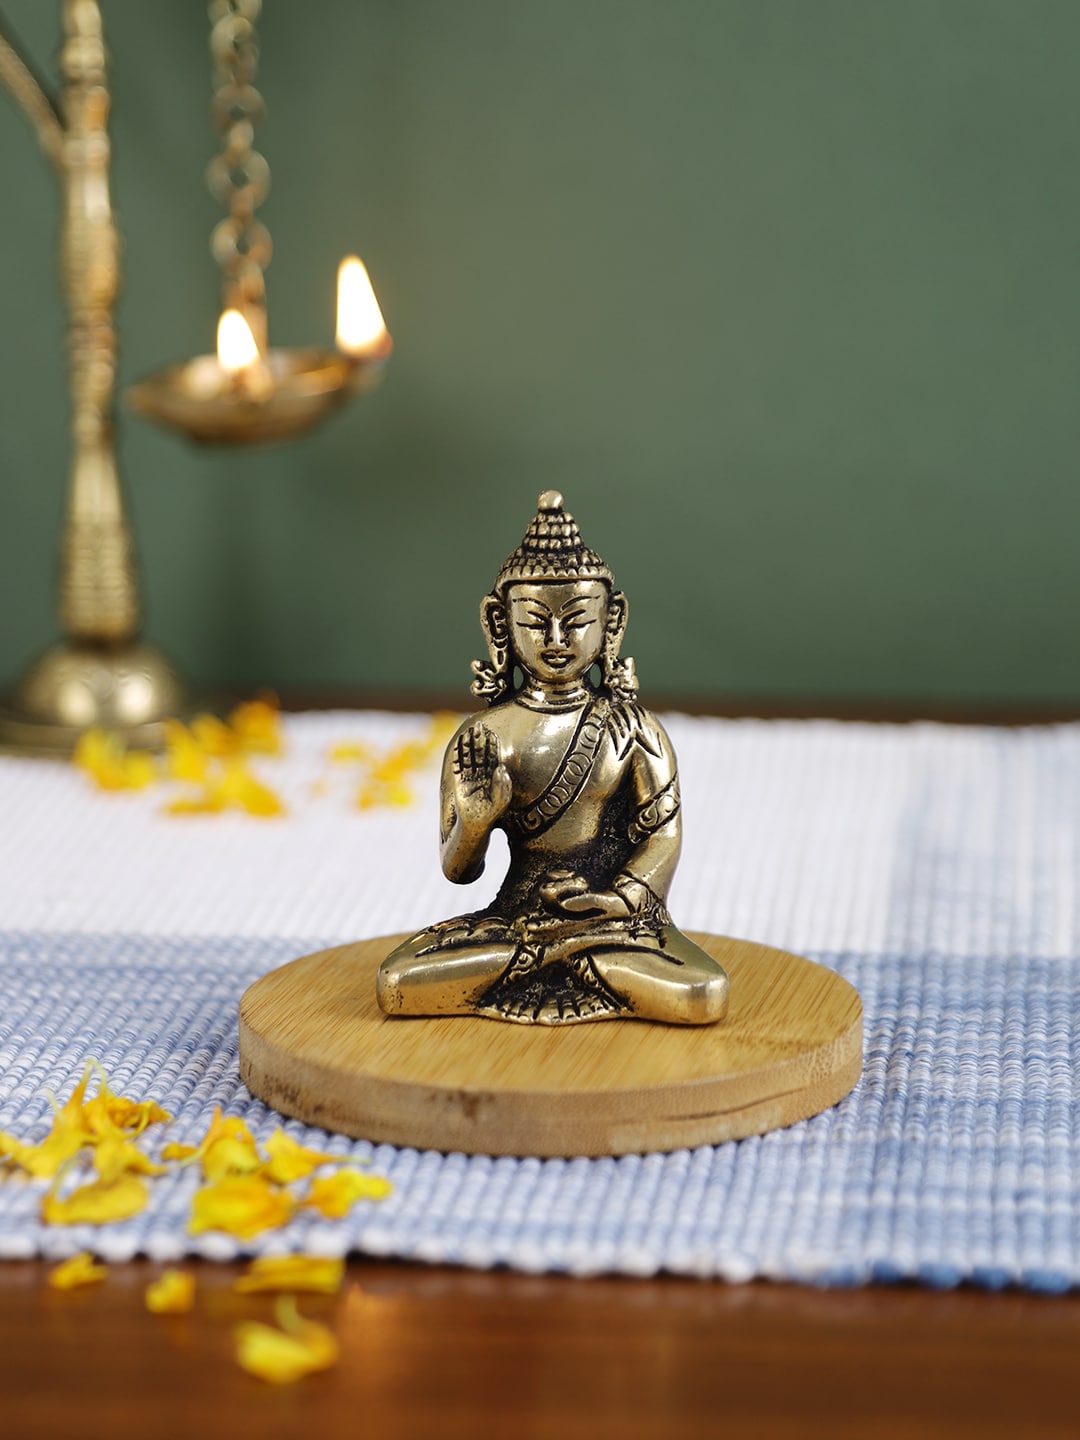 Imli Street Gold-Toned Brass Buddha Idol Price in India